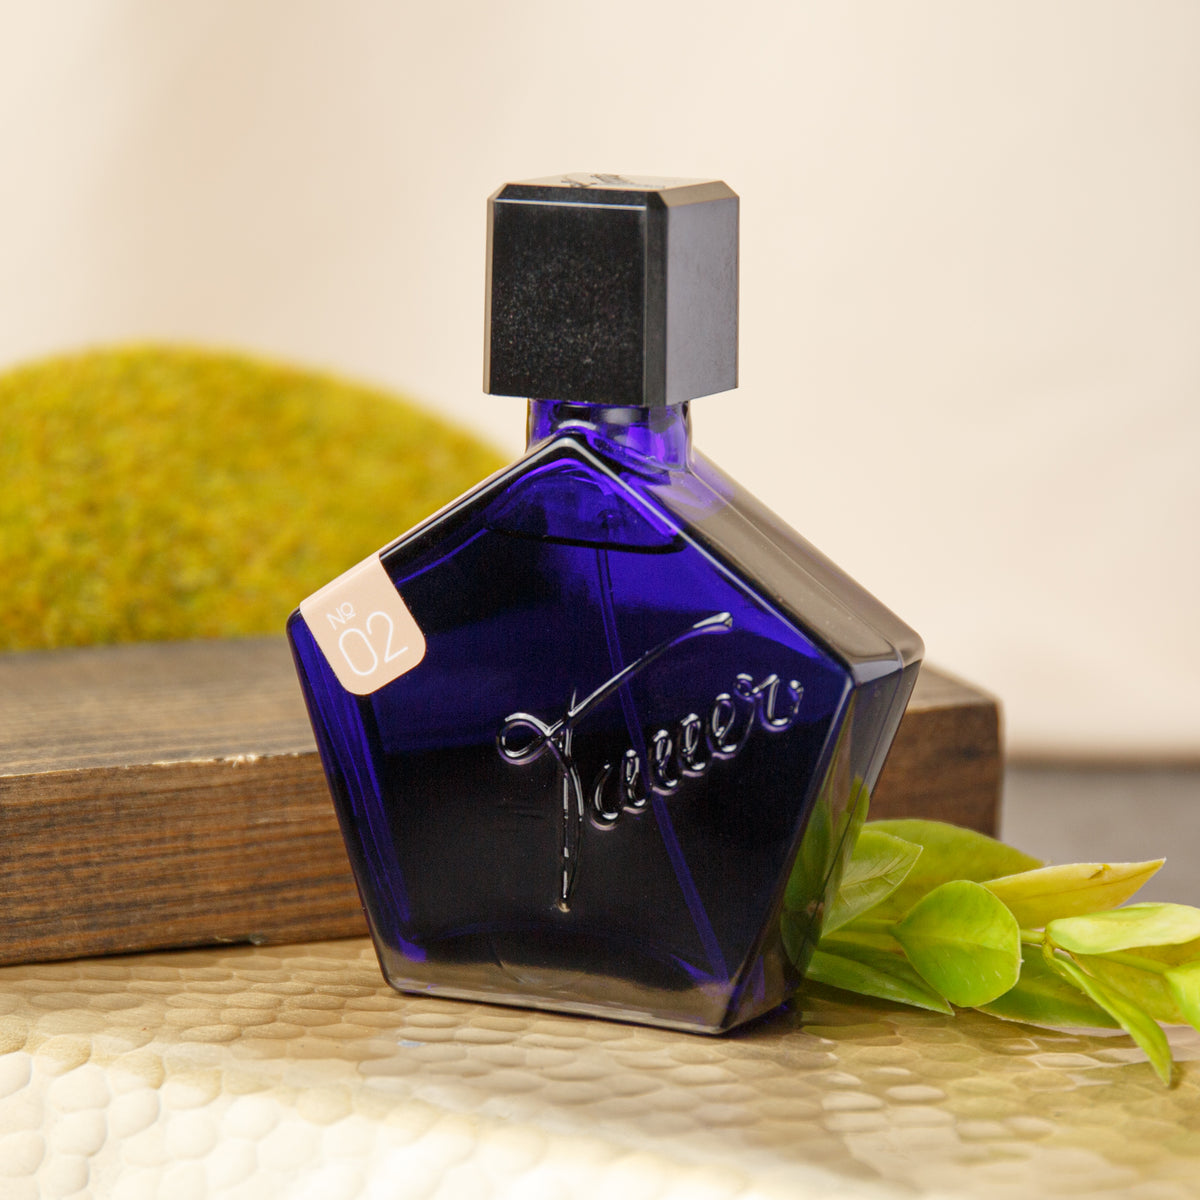 Tauer Perfumes L'Air Du Desert Marocain Eau de Toilette (50 ml